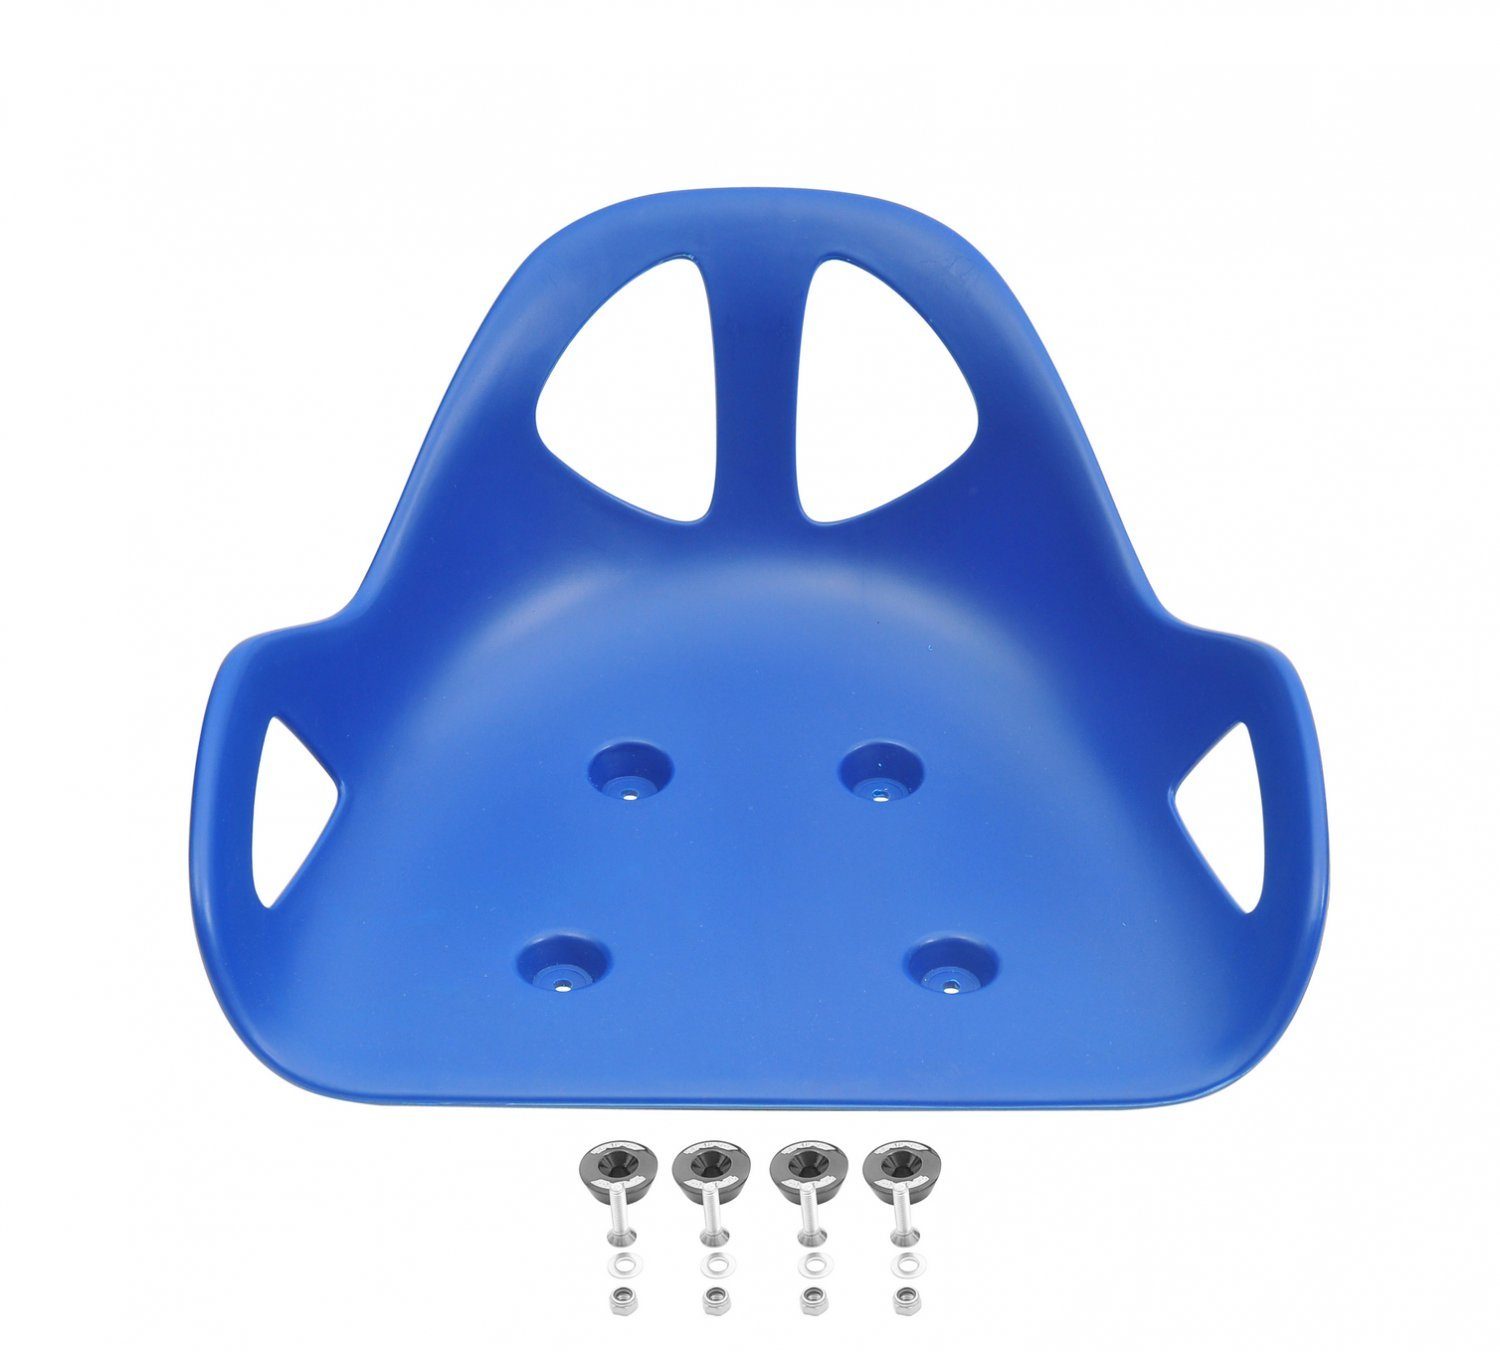 Triad Erwachsenendreirad Drift inkl. Trike blau Sitz Kunststoffsitz 4 Befestigungscaps Alucaps Befestigung, mit zur